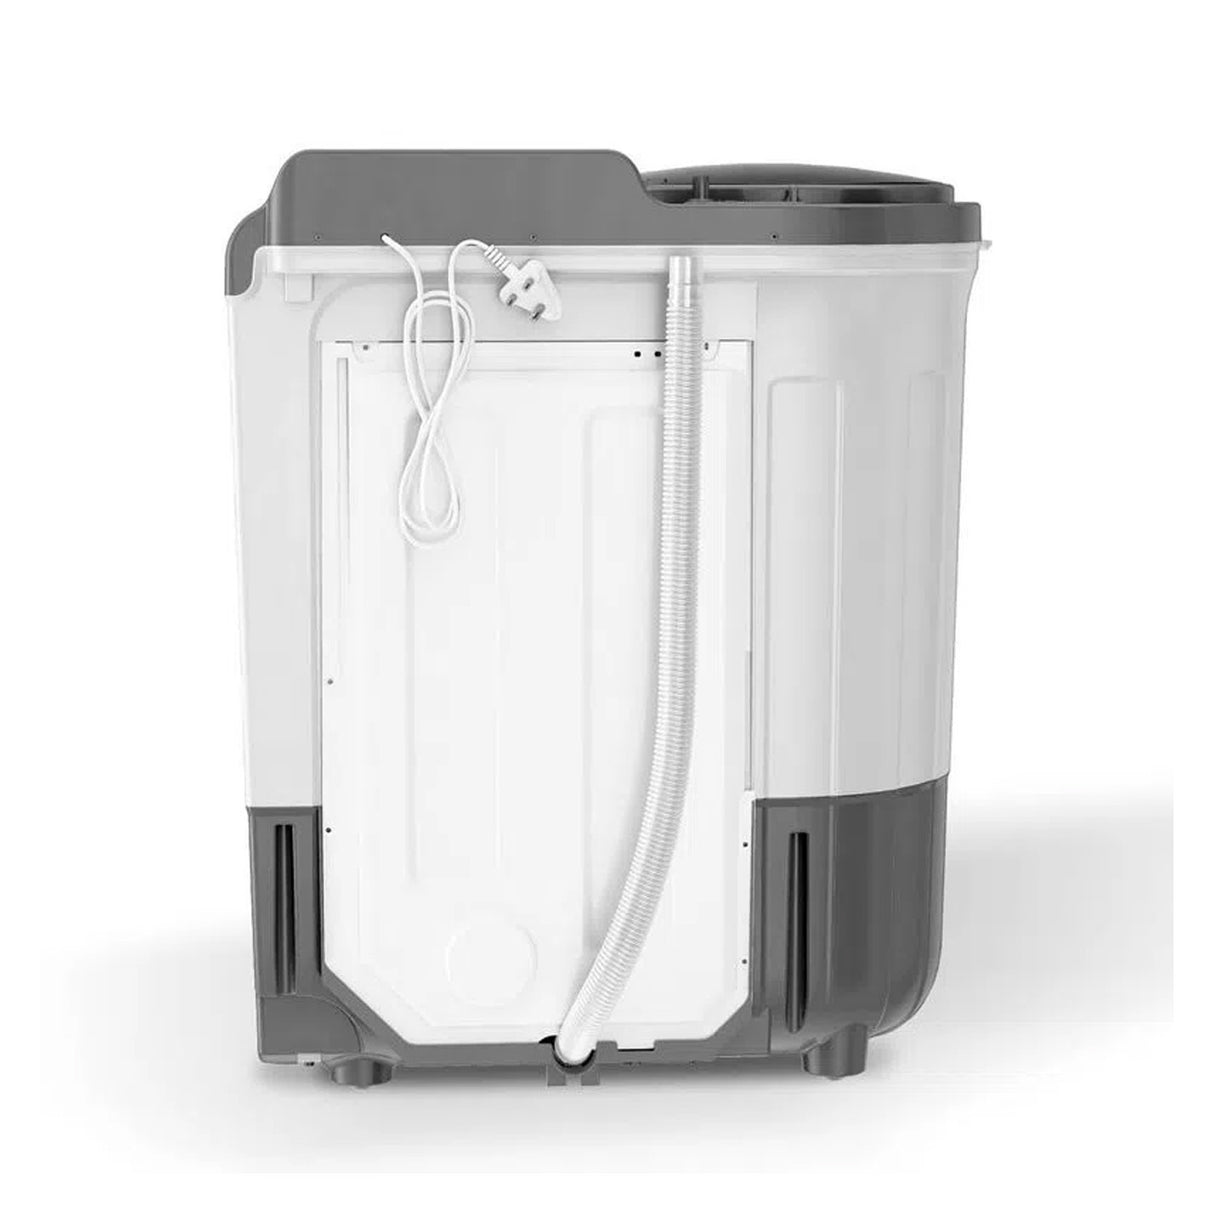 Whirlpool 7kg Semi-Auto Washer - Ace Super Soak (W.POOL WM 30299)